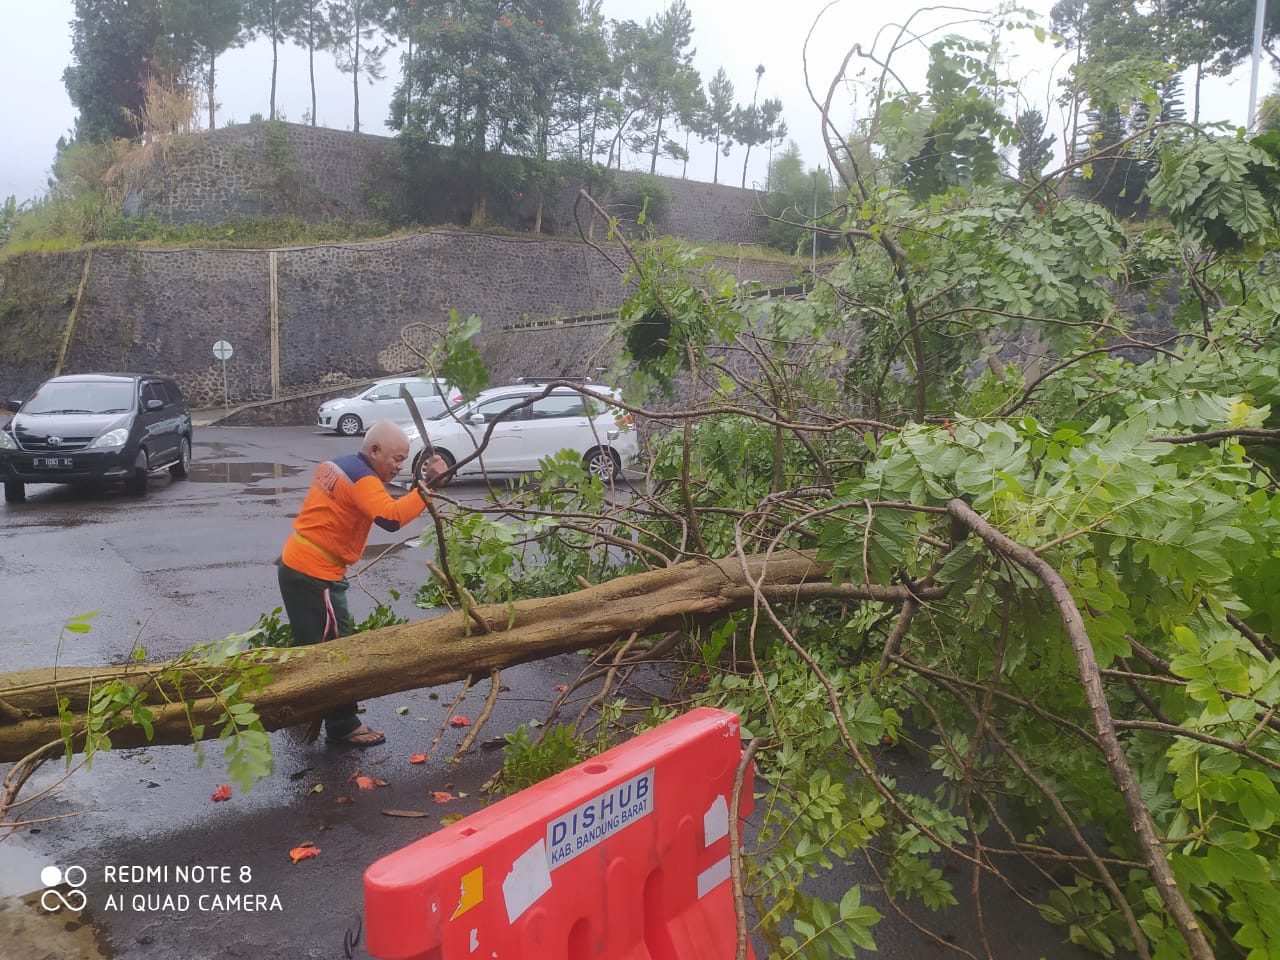 Hujan Angin Tumbangkan Pohon Setinggi 15 Meter di Kantor Bupati Bandung Barat